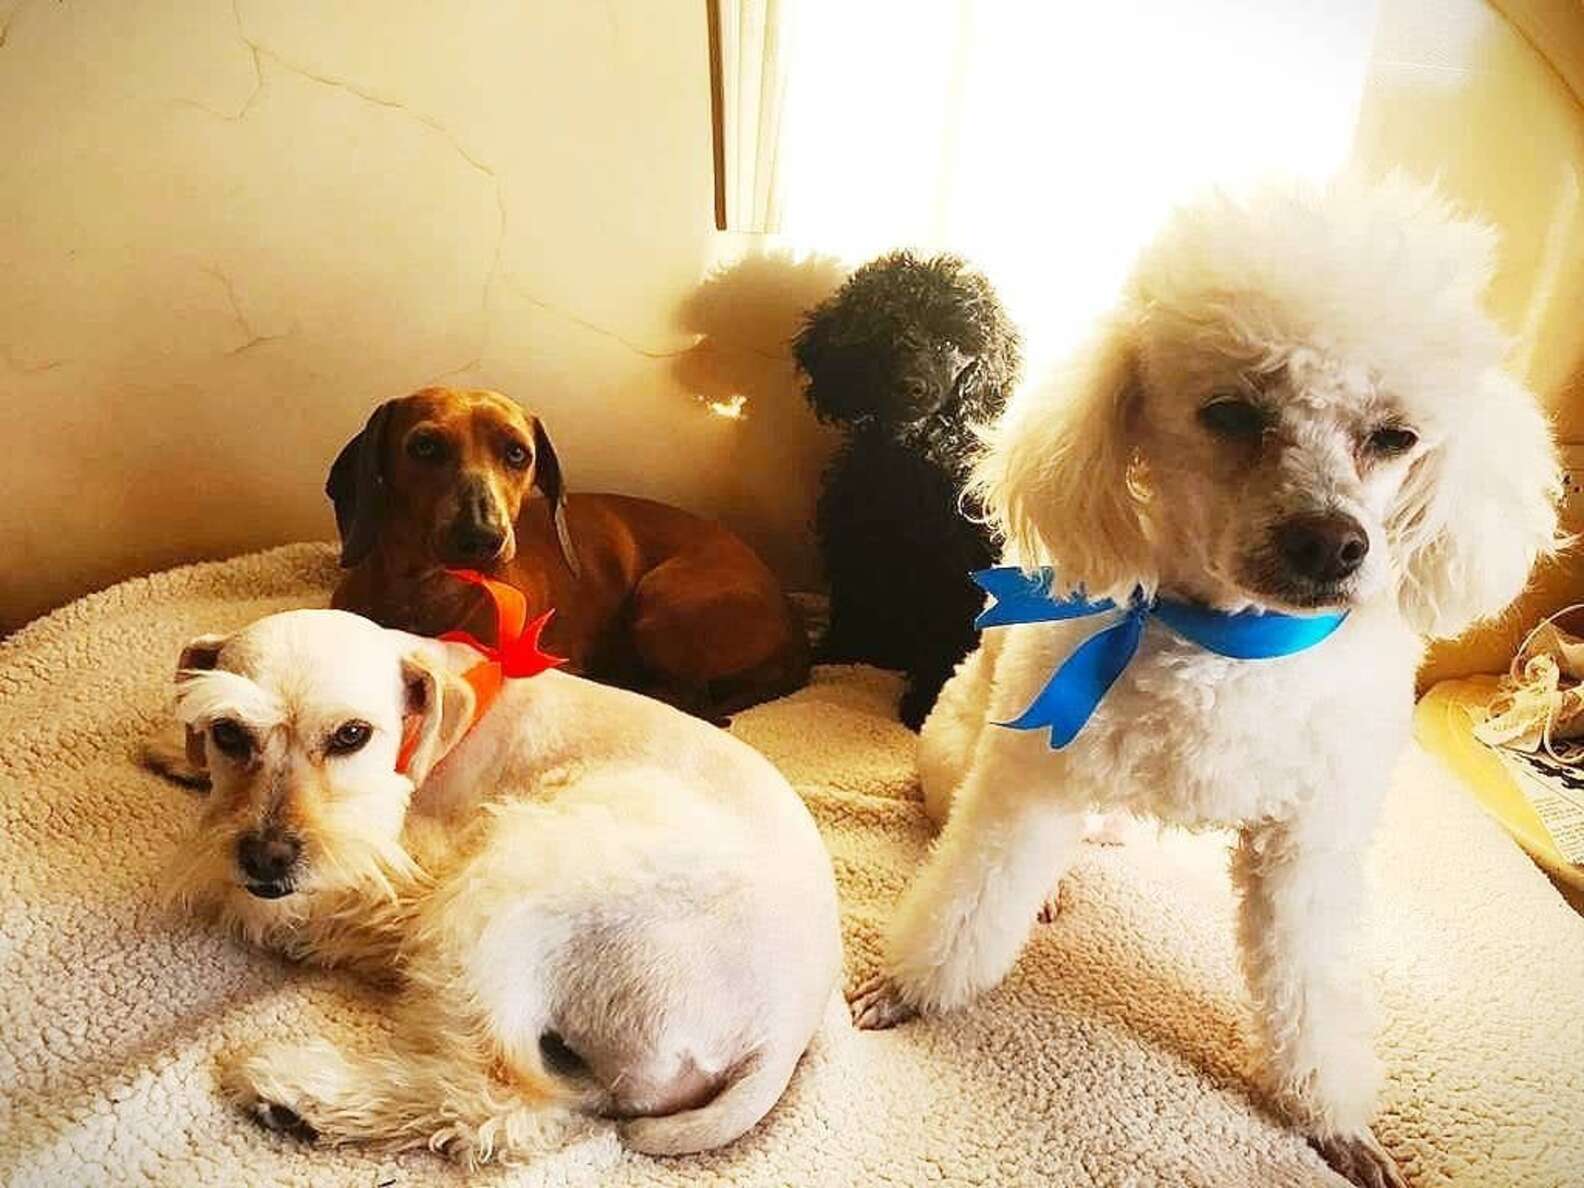 Mina kutyus és barátai - Szerencsés balesete után még jobban vigyáznak majd rájuk a gazdik